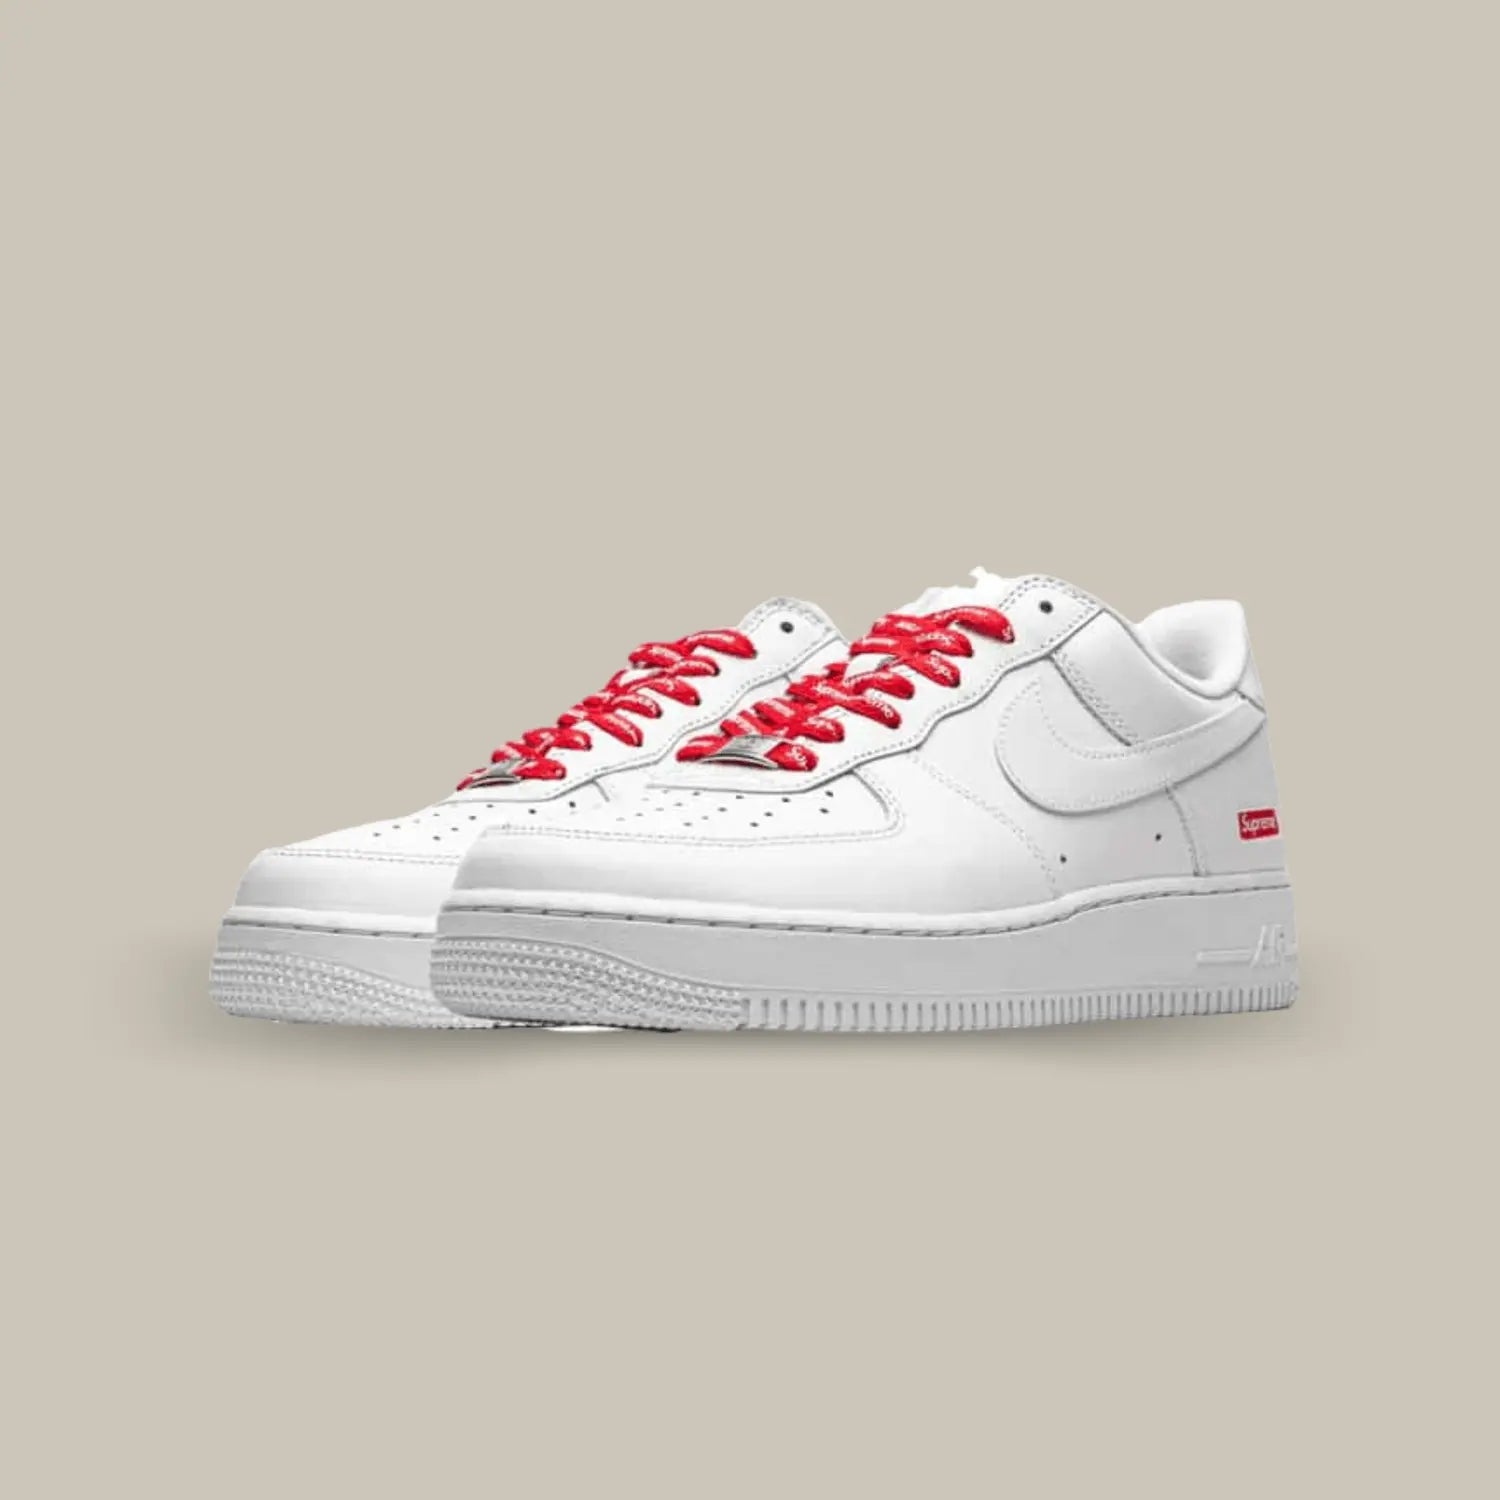 On retrouve une Nike Air Force 1 White Supreme avec son classique cuir blanc et la petite touche Supreme avec le logo sur fond rouge.